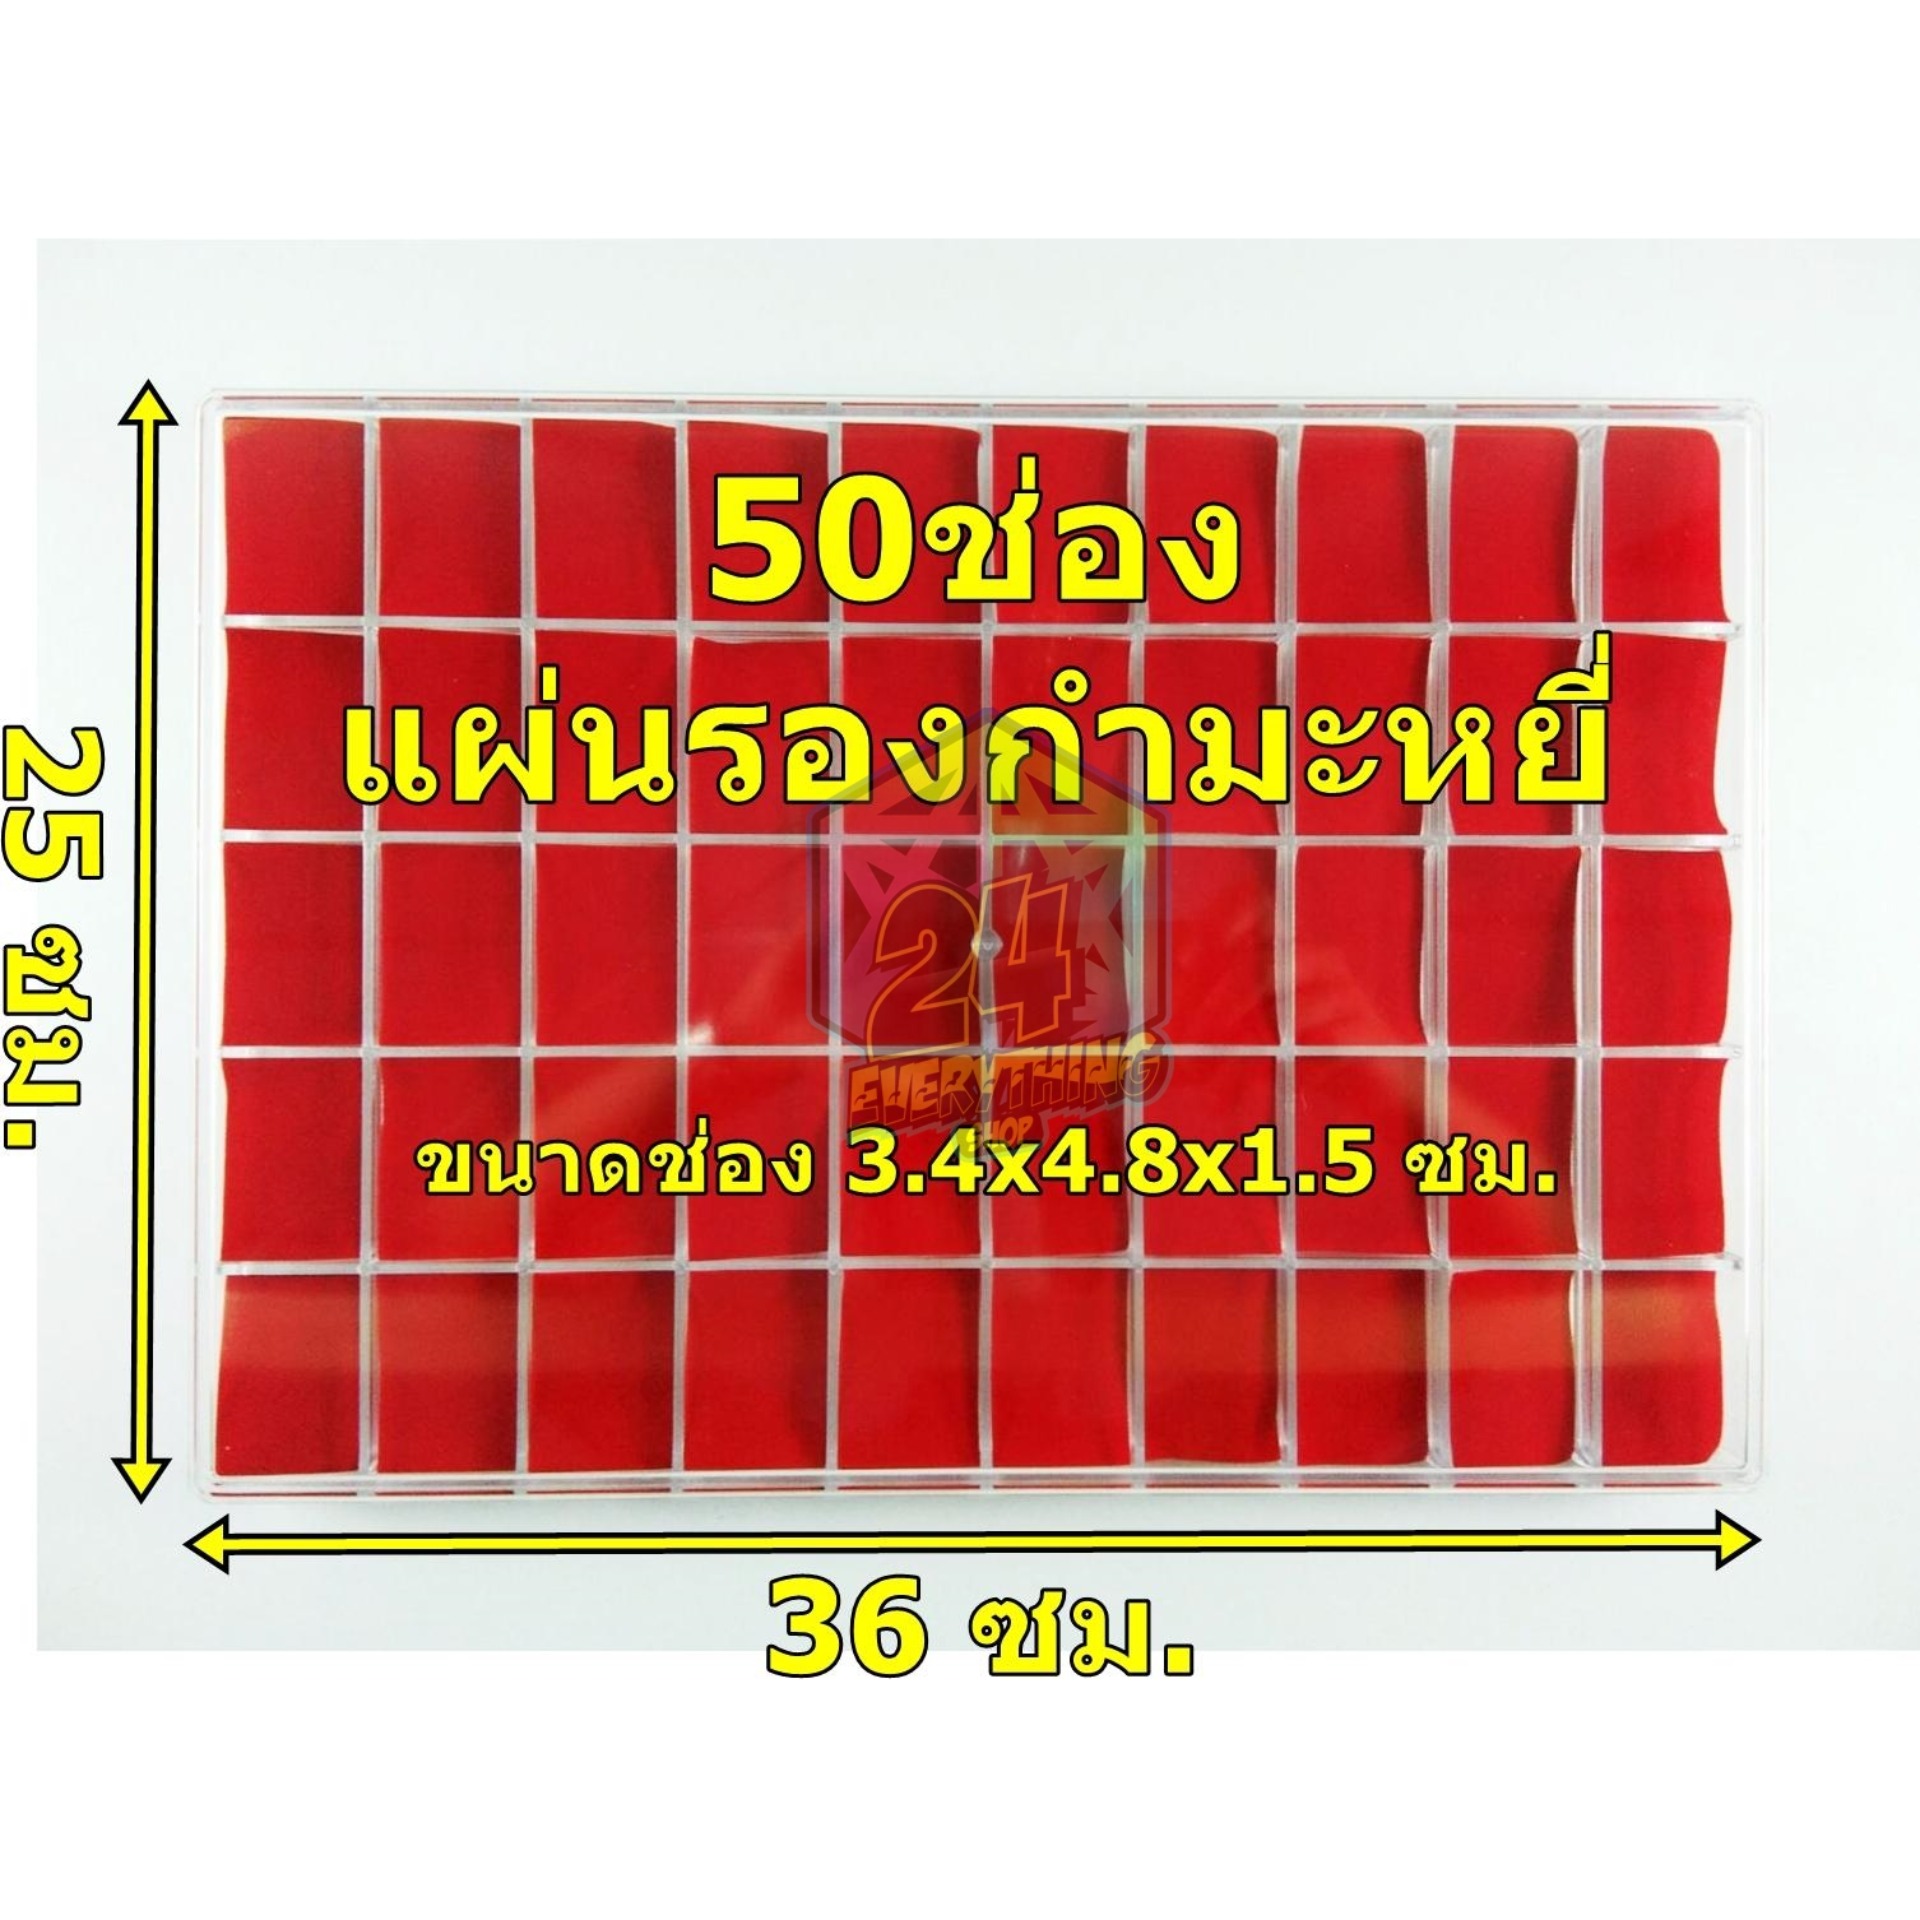 กล่องพระ50ช่อง รุ่นแผ่นรองกำมะหยี่สีแดง กล่องใส่ของสะสม กล่องเหรียญ กล่องสะสม กล่องแบ่งช่อง 25 x 36 cm (50ช่อง แผ่นรองกำมะหยี่)